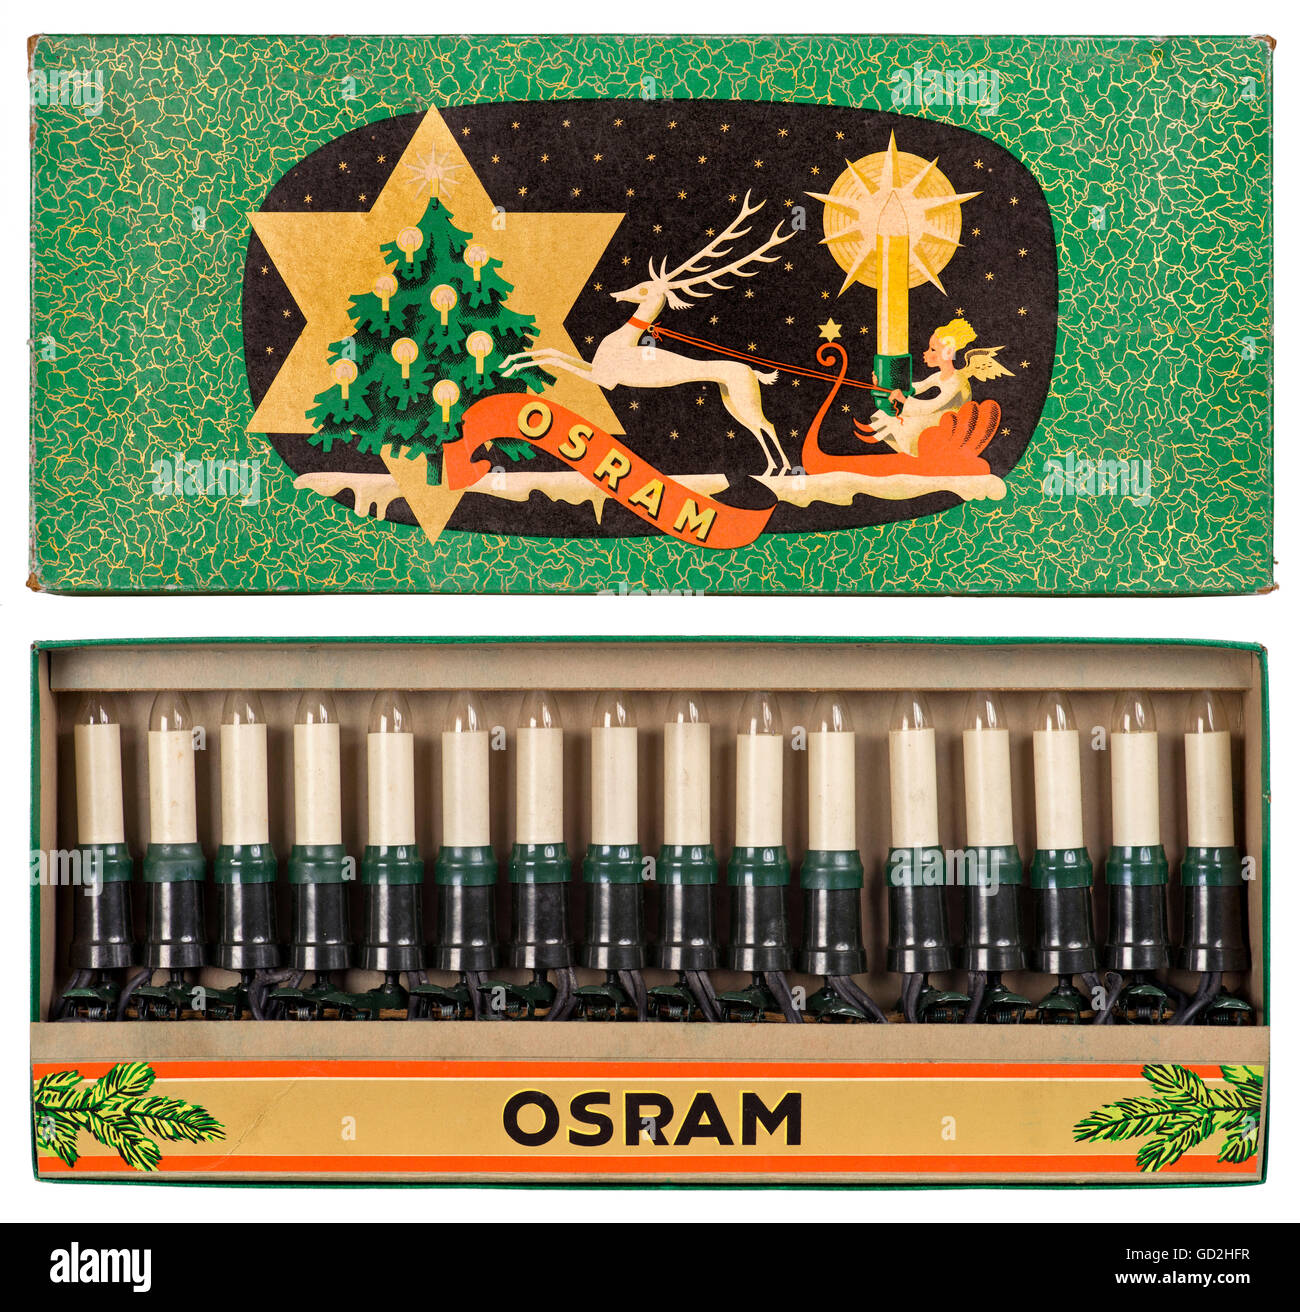 Natale, le illuminazioni dell'albero di Natale, Osram, luci delle fate in imballaggio originale, Germania, circa 1958, diritti aggiuntivi-clearences-non disponibile Foto Stock